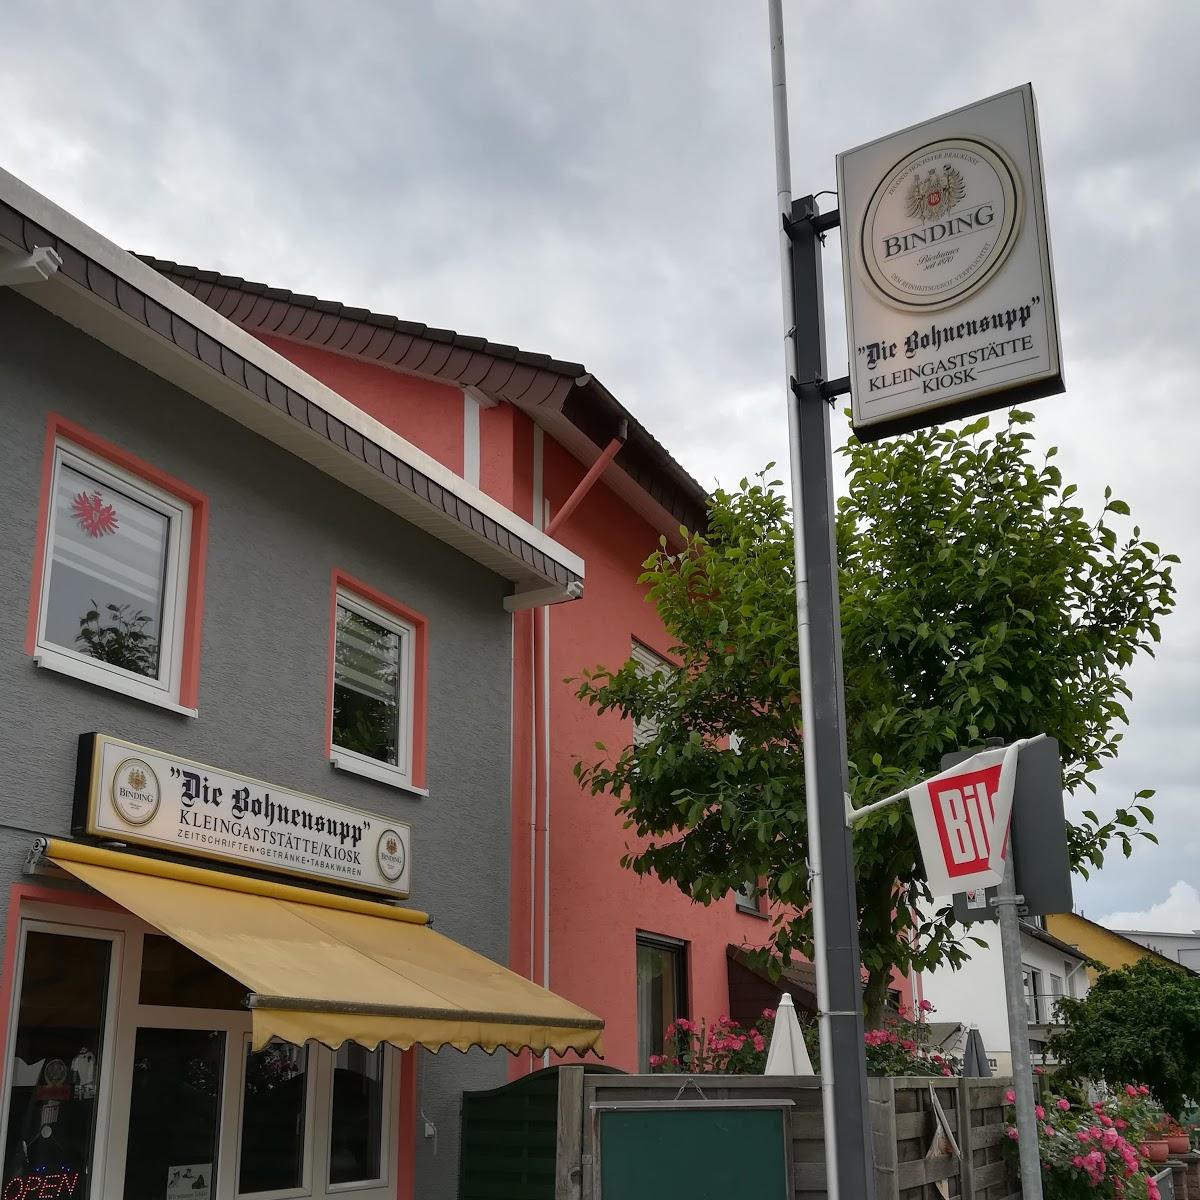 Restaurant "Z" in Dreieich